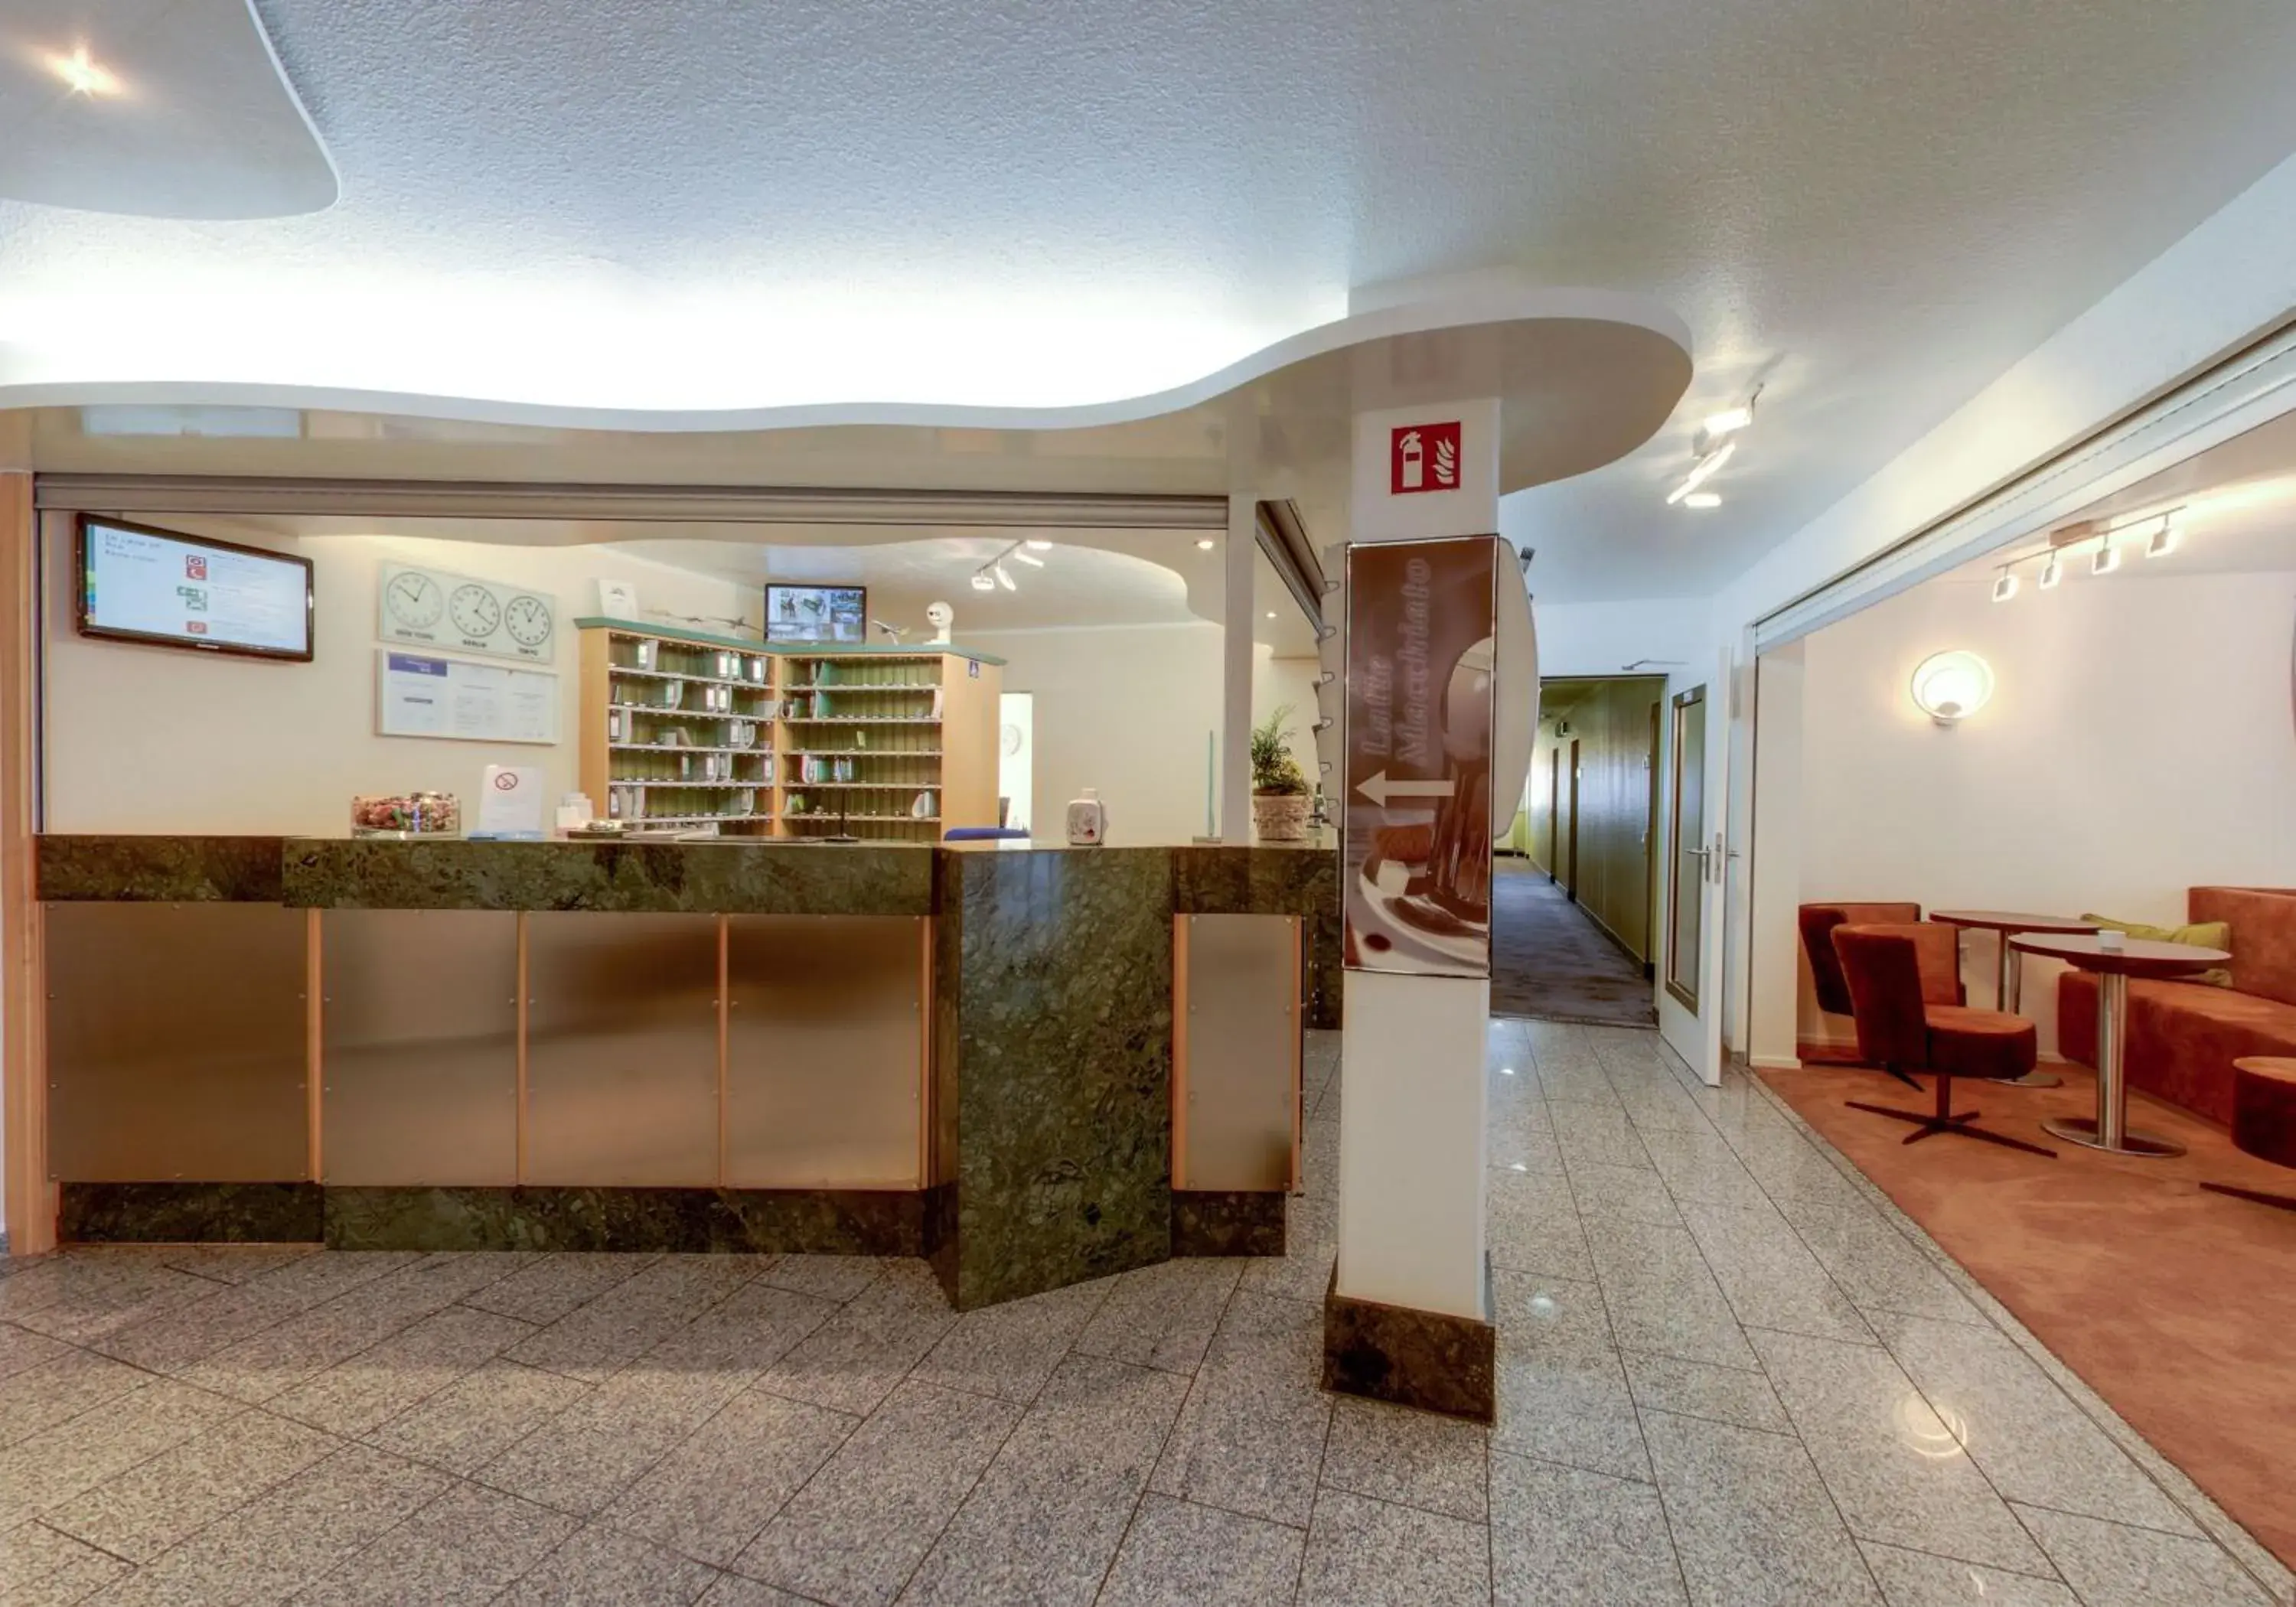 Lobby or reception, Lobby/Reception in Apartmenthotel Residenz Steinenbronn